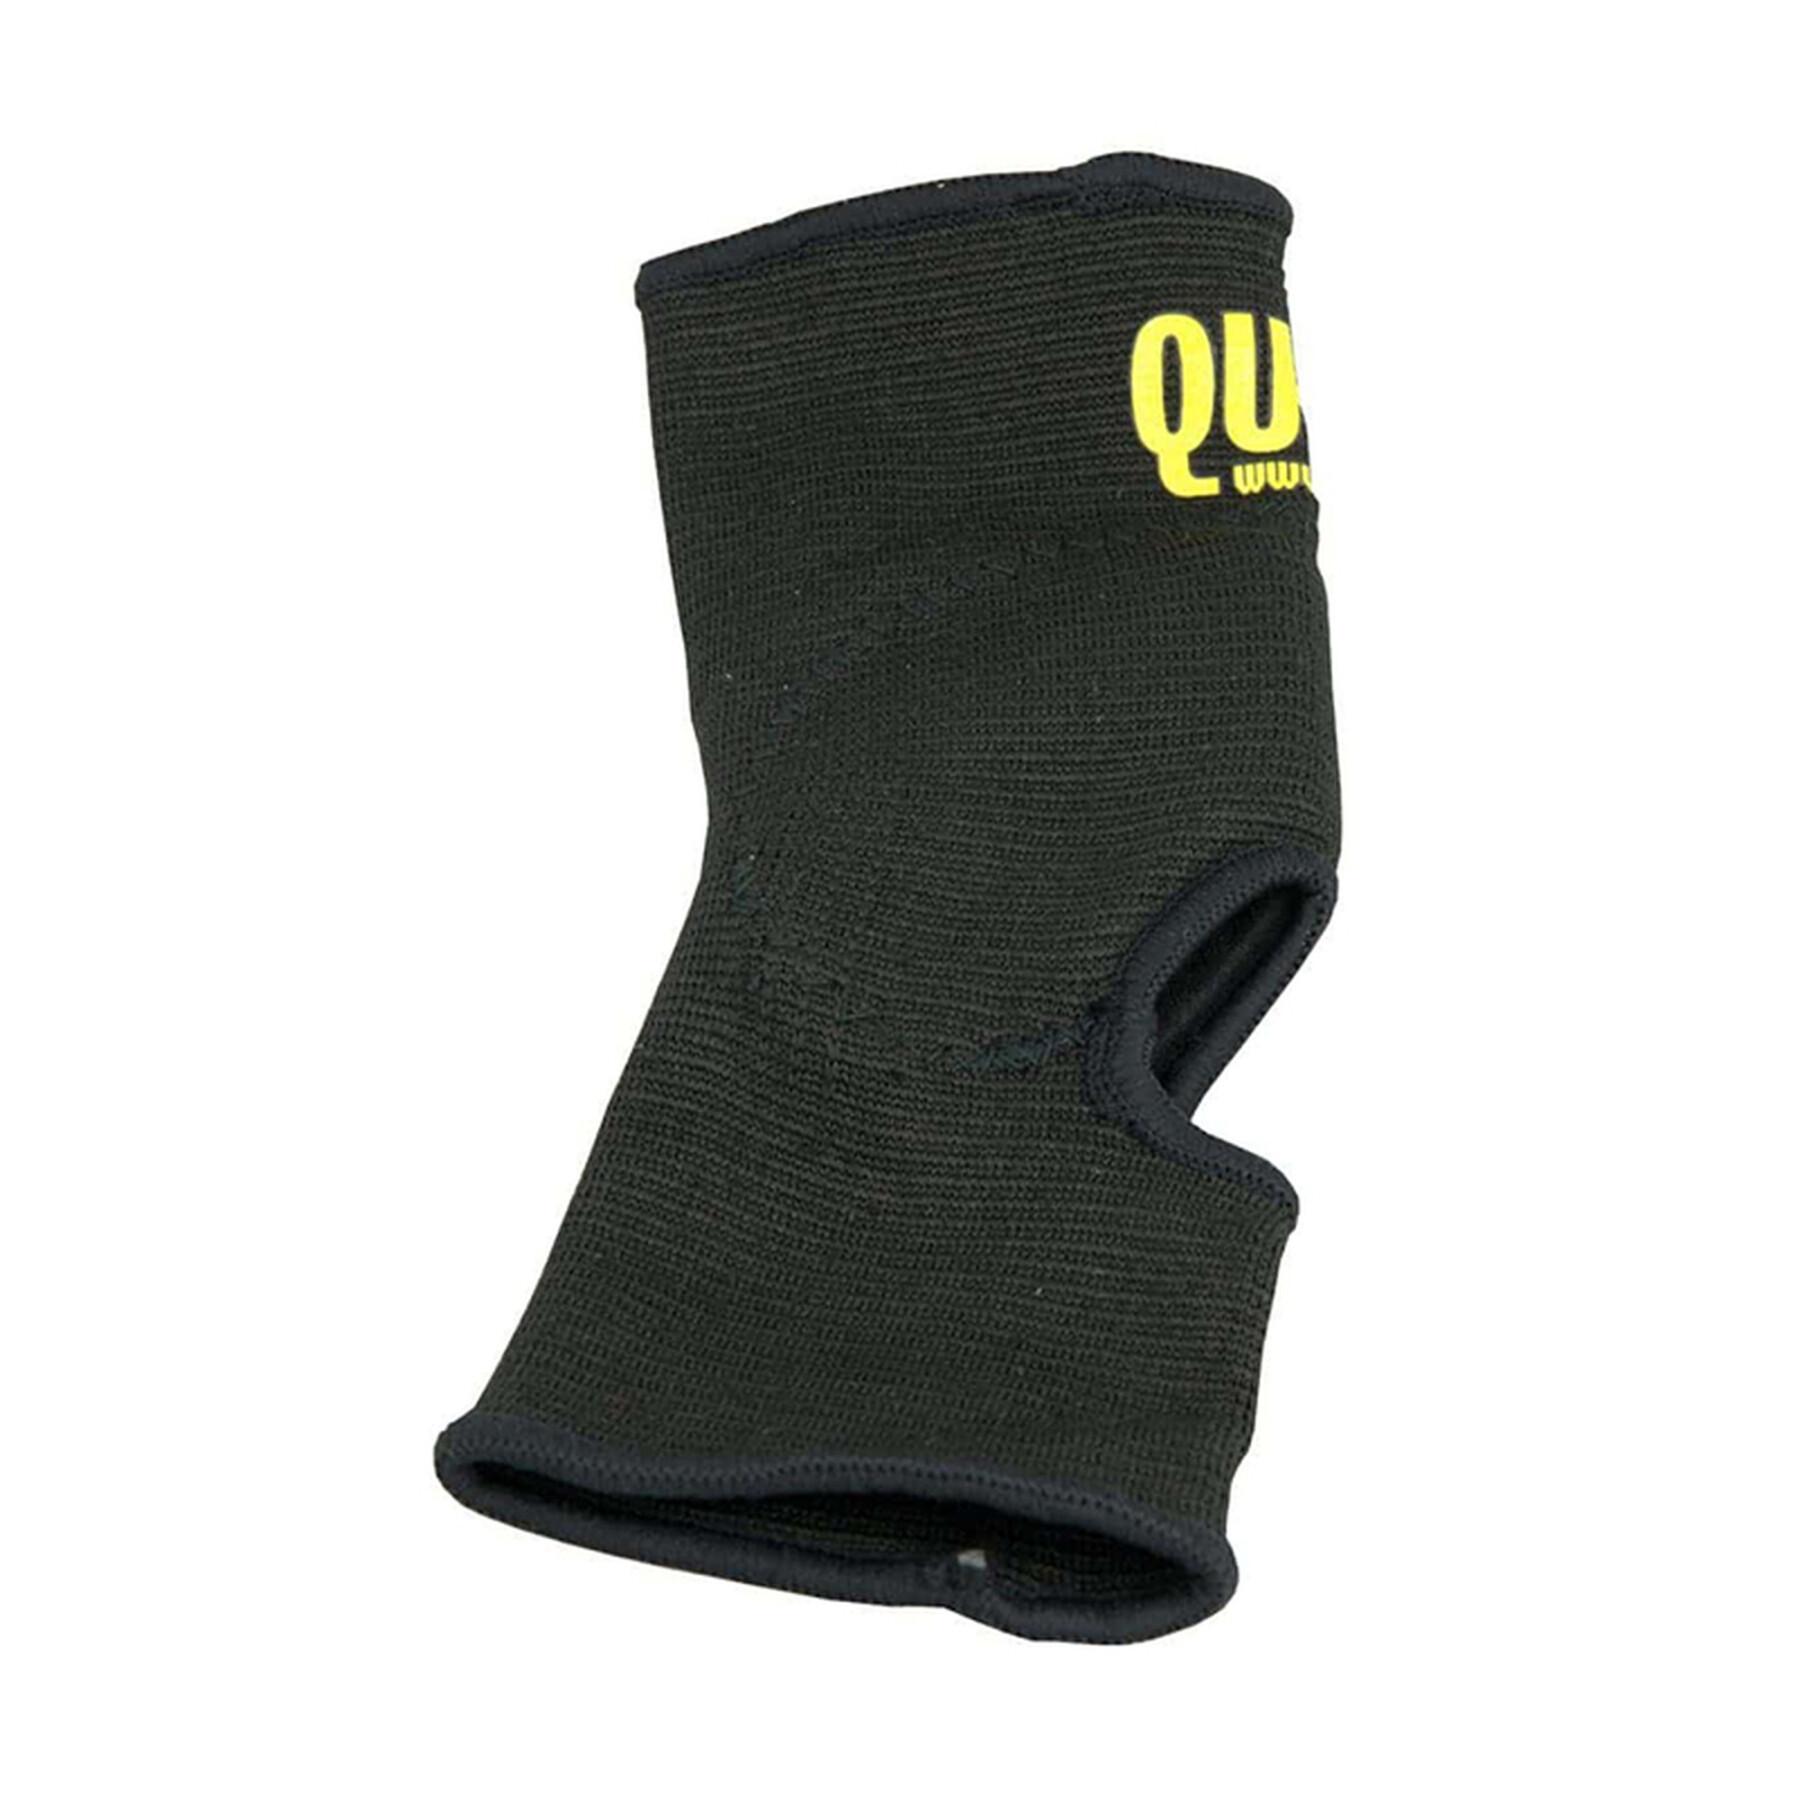 Children's ankle brace QU-AX